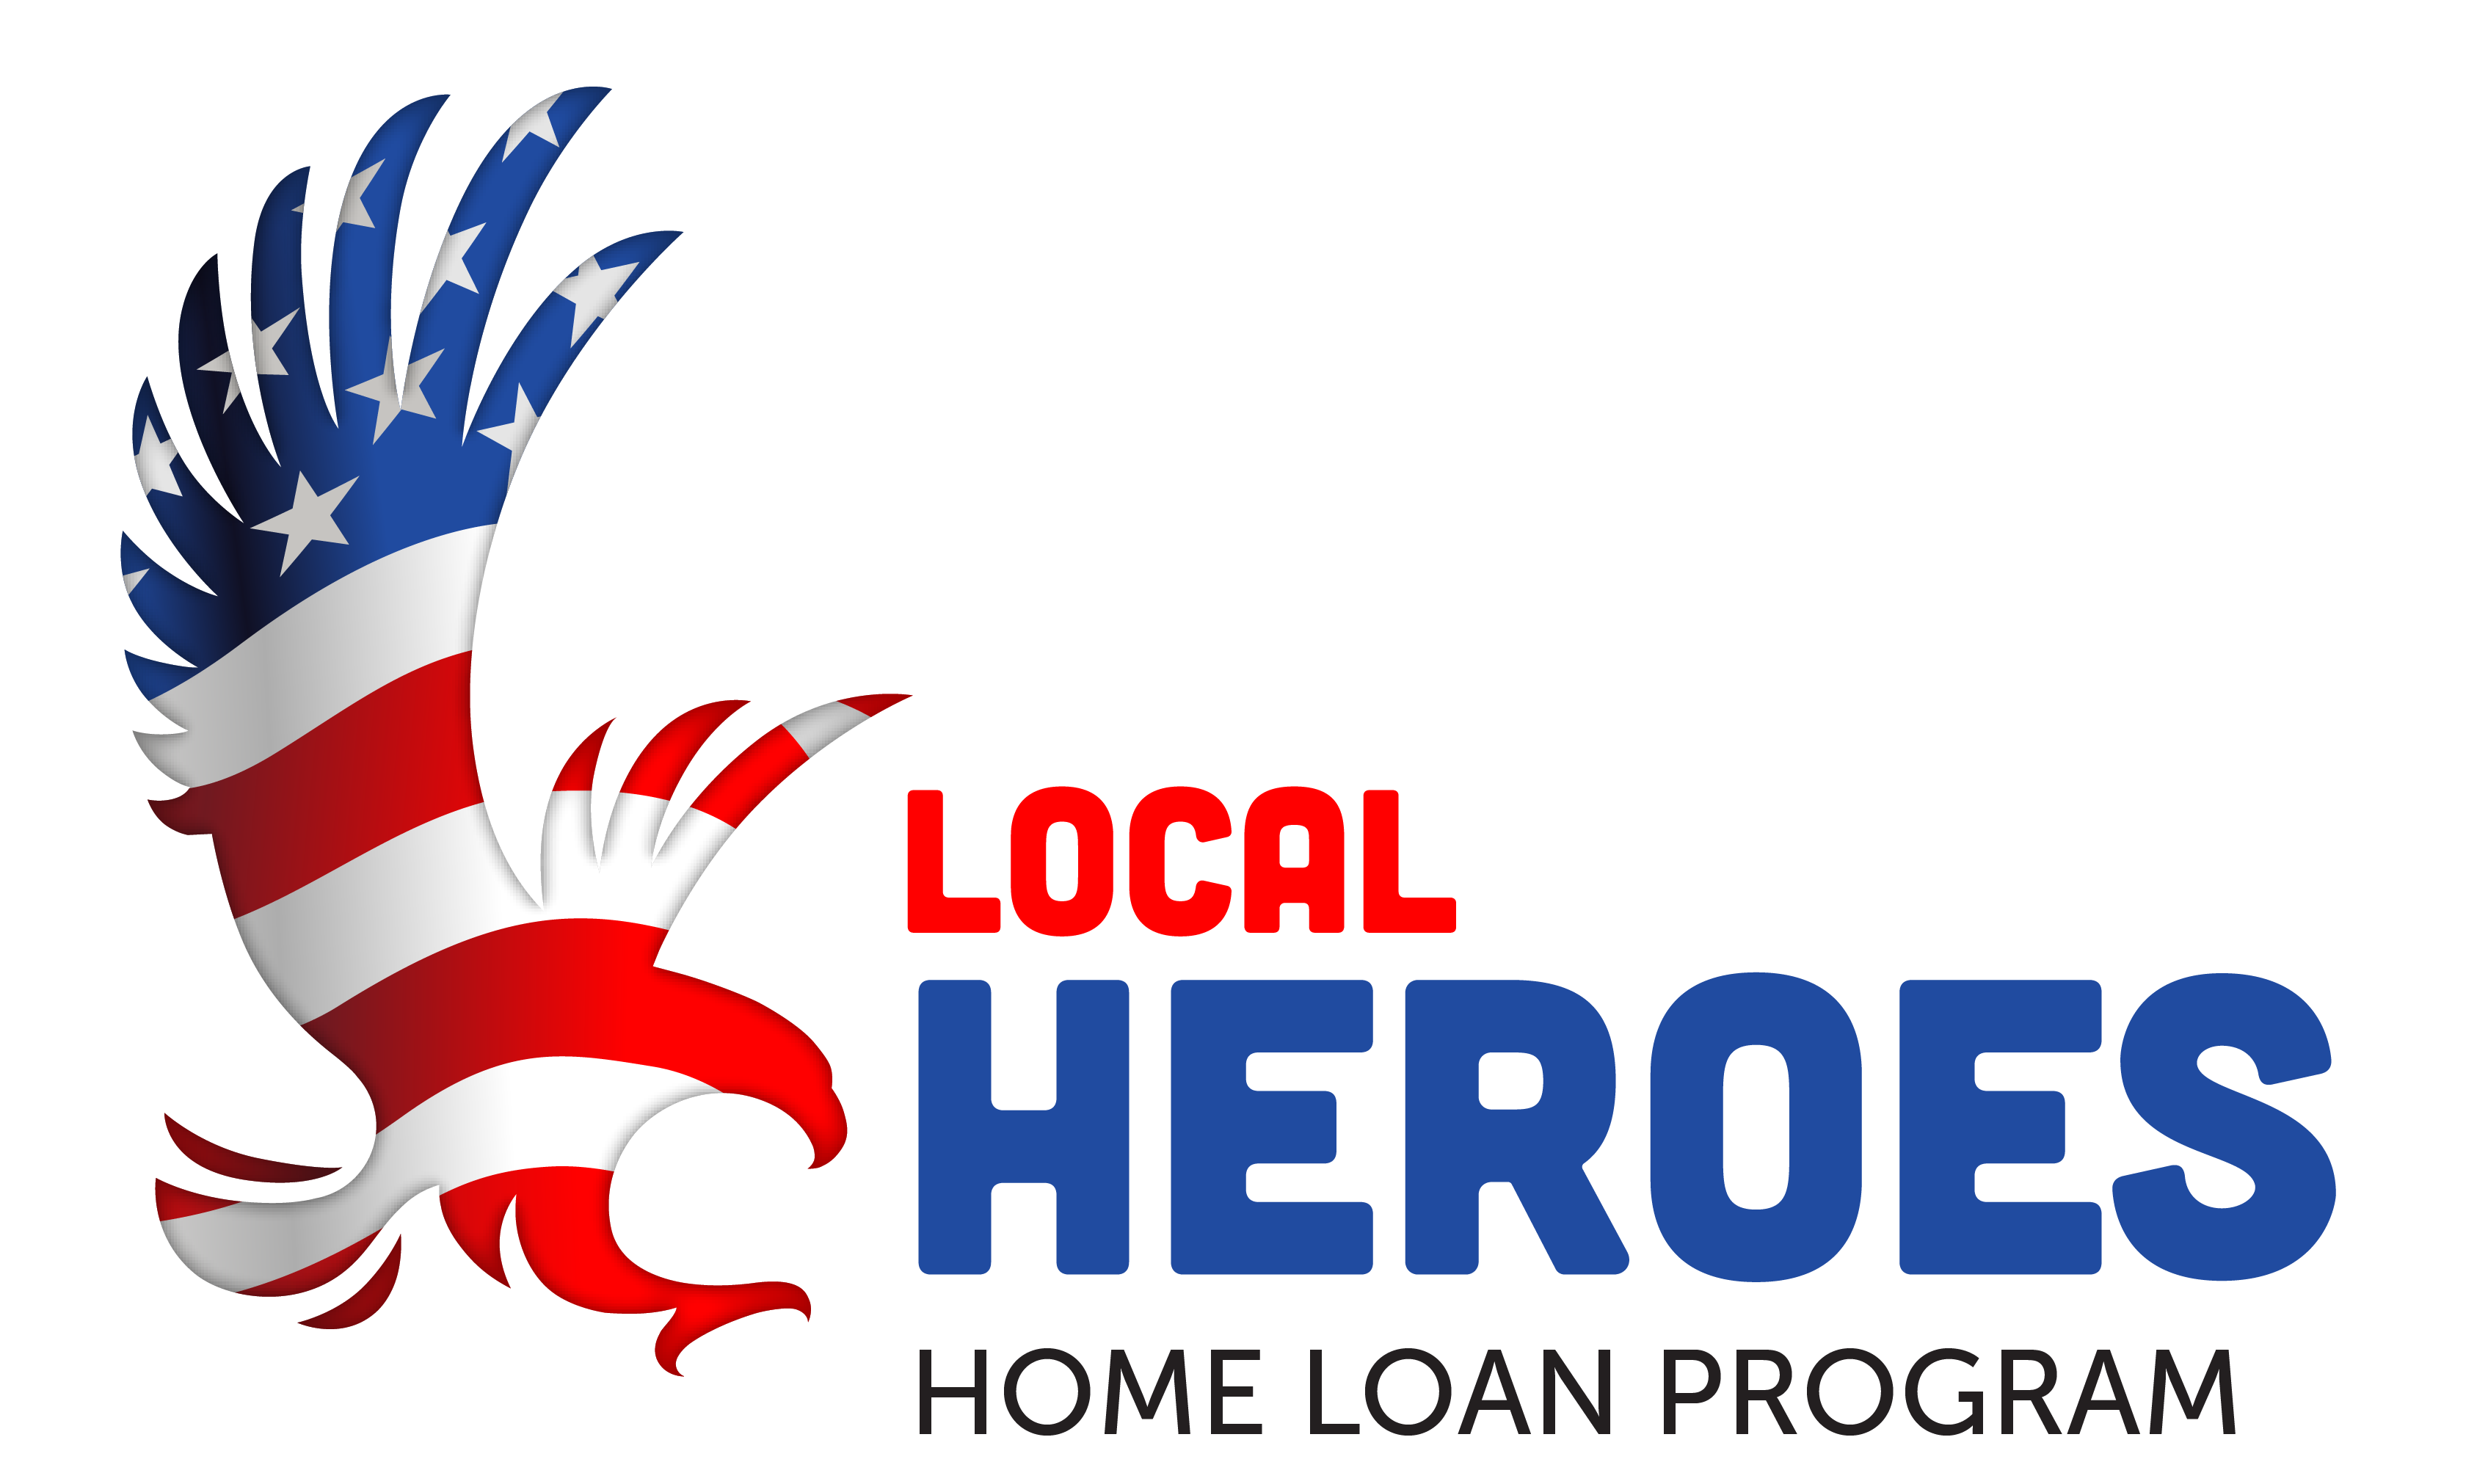 Gb Heroeslogo 2 1 Home Loan Program 01